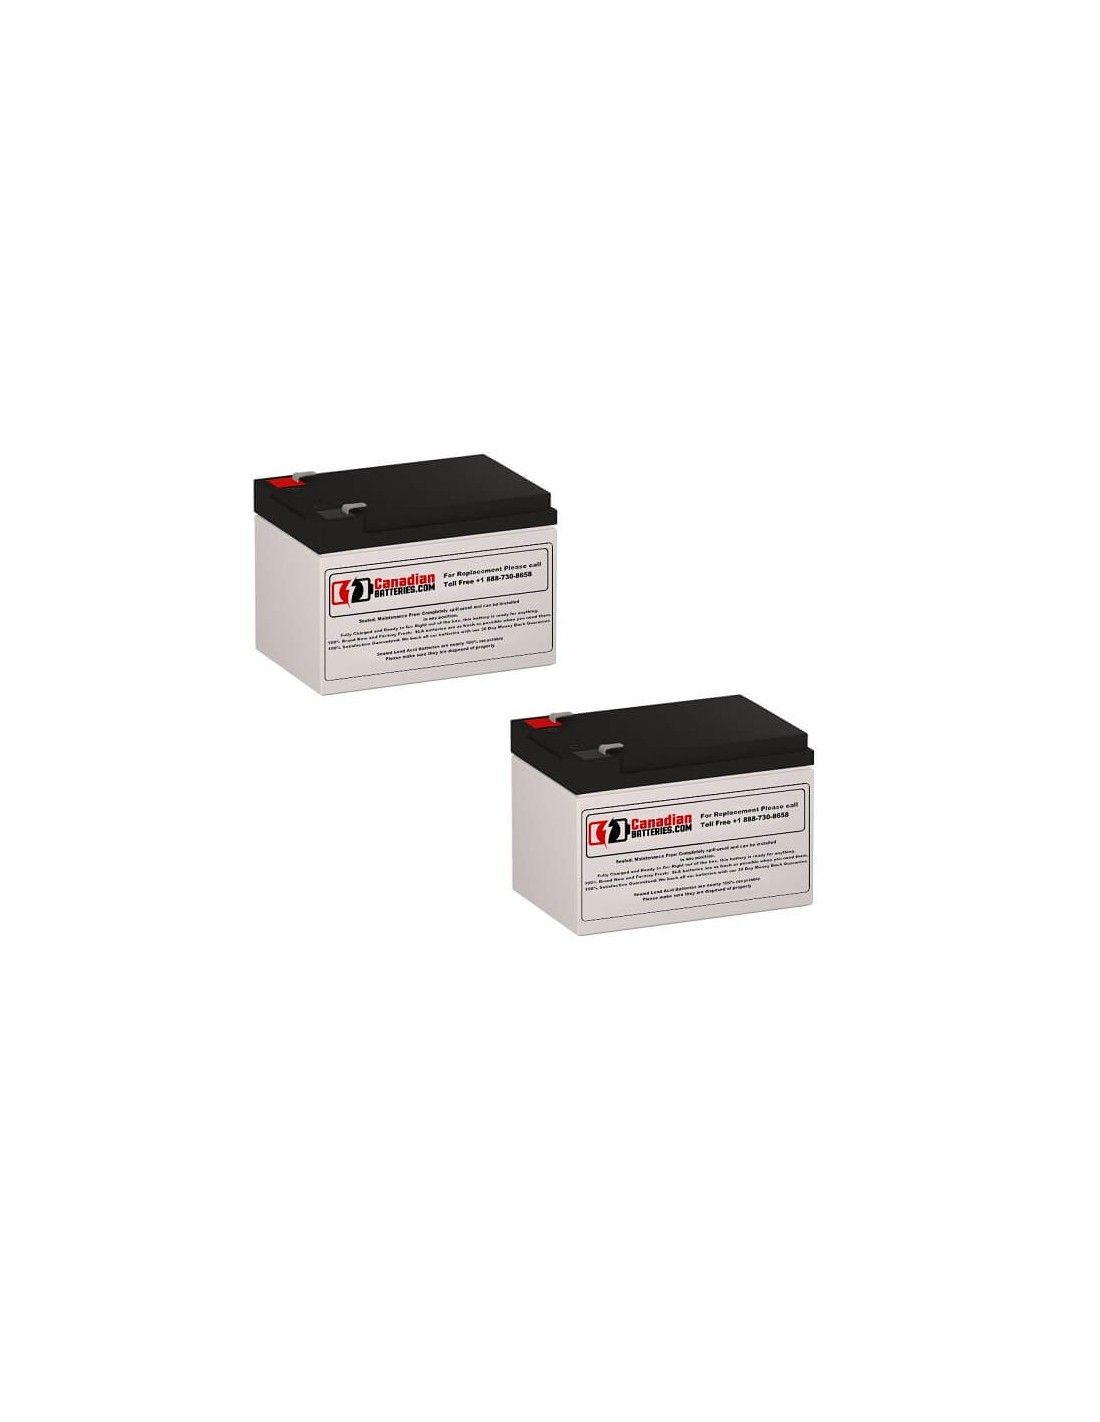 Batteries for Belkin F6c1000-eur UPS, 2 x 12V, 12Ah - 144Wh